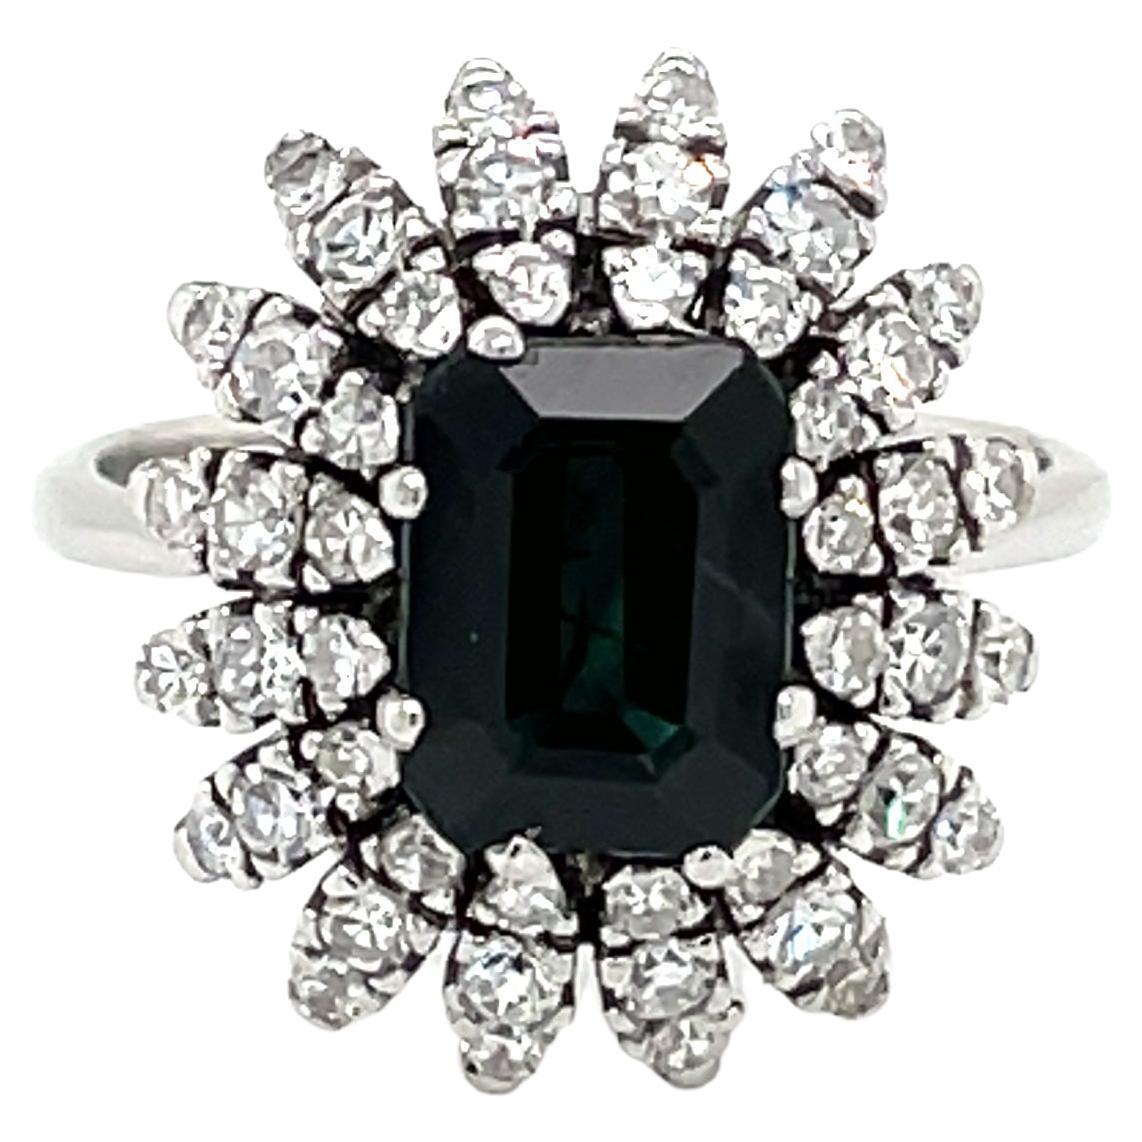 Belle Époque Sapphire Diamond Engagement Ring